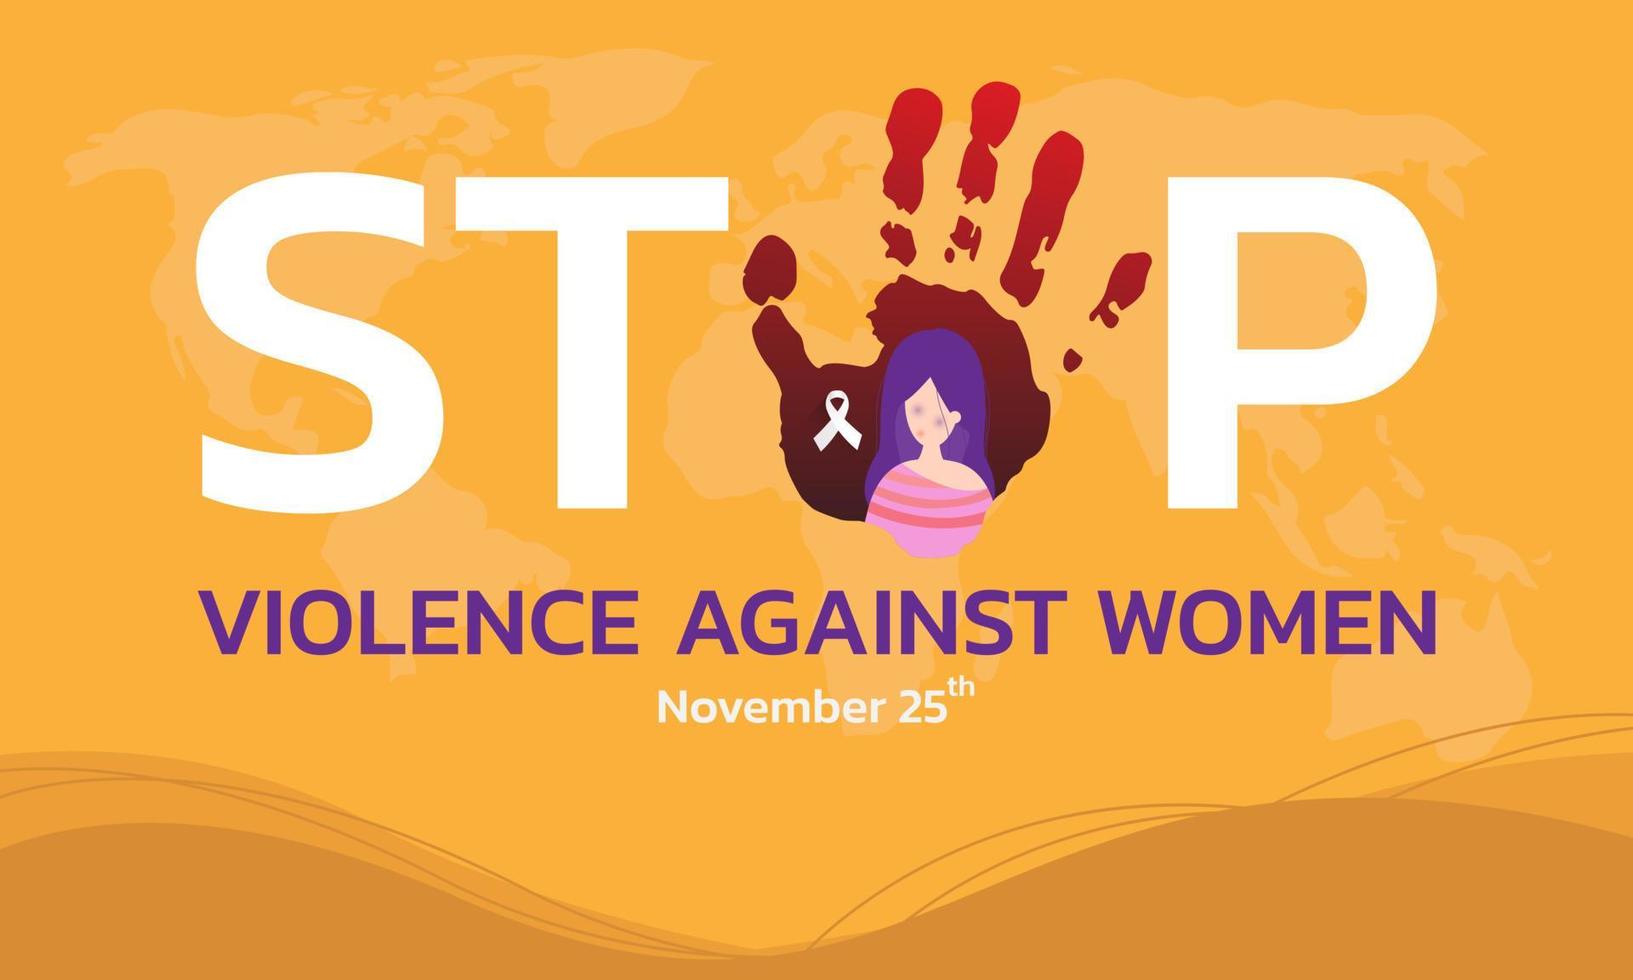 vektorillustration av en bakgrund för internationella dagen för avskaffande av våld mot kvinnor vektor